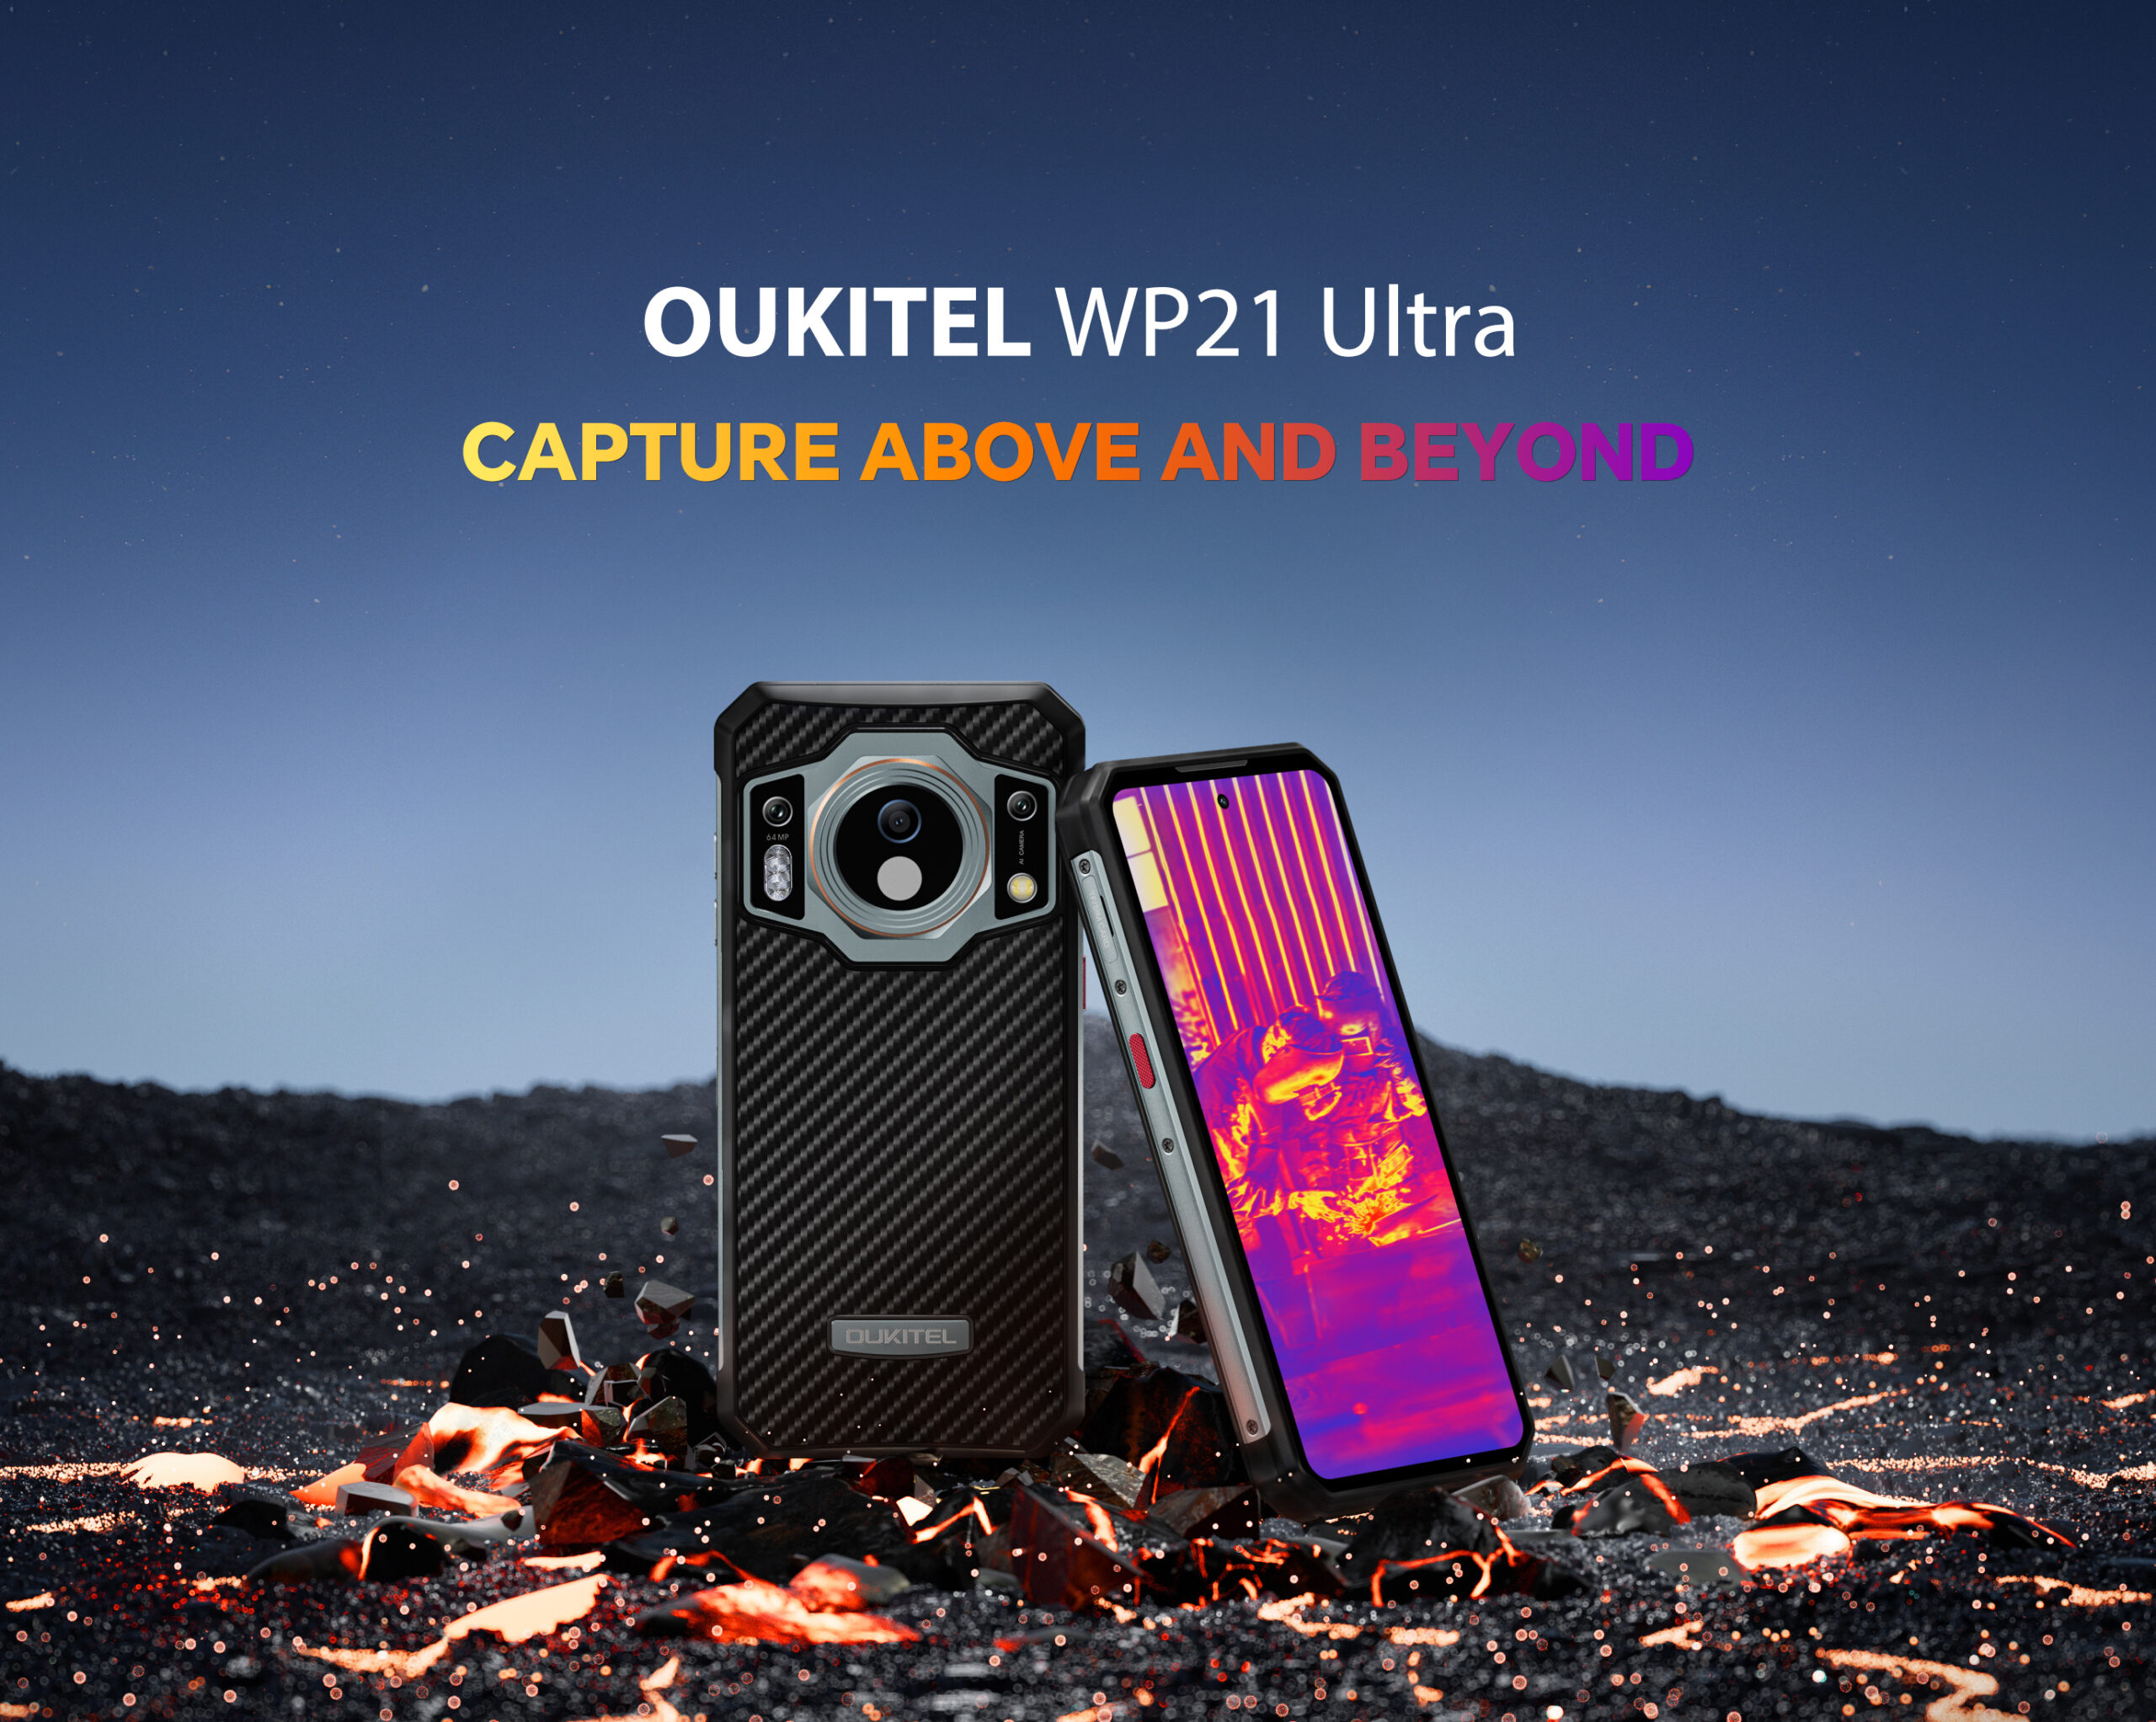 O mais recente modelo principal da Oukitel, WP21 Ultra, chega em breve com uma câmera térmica 4